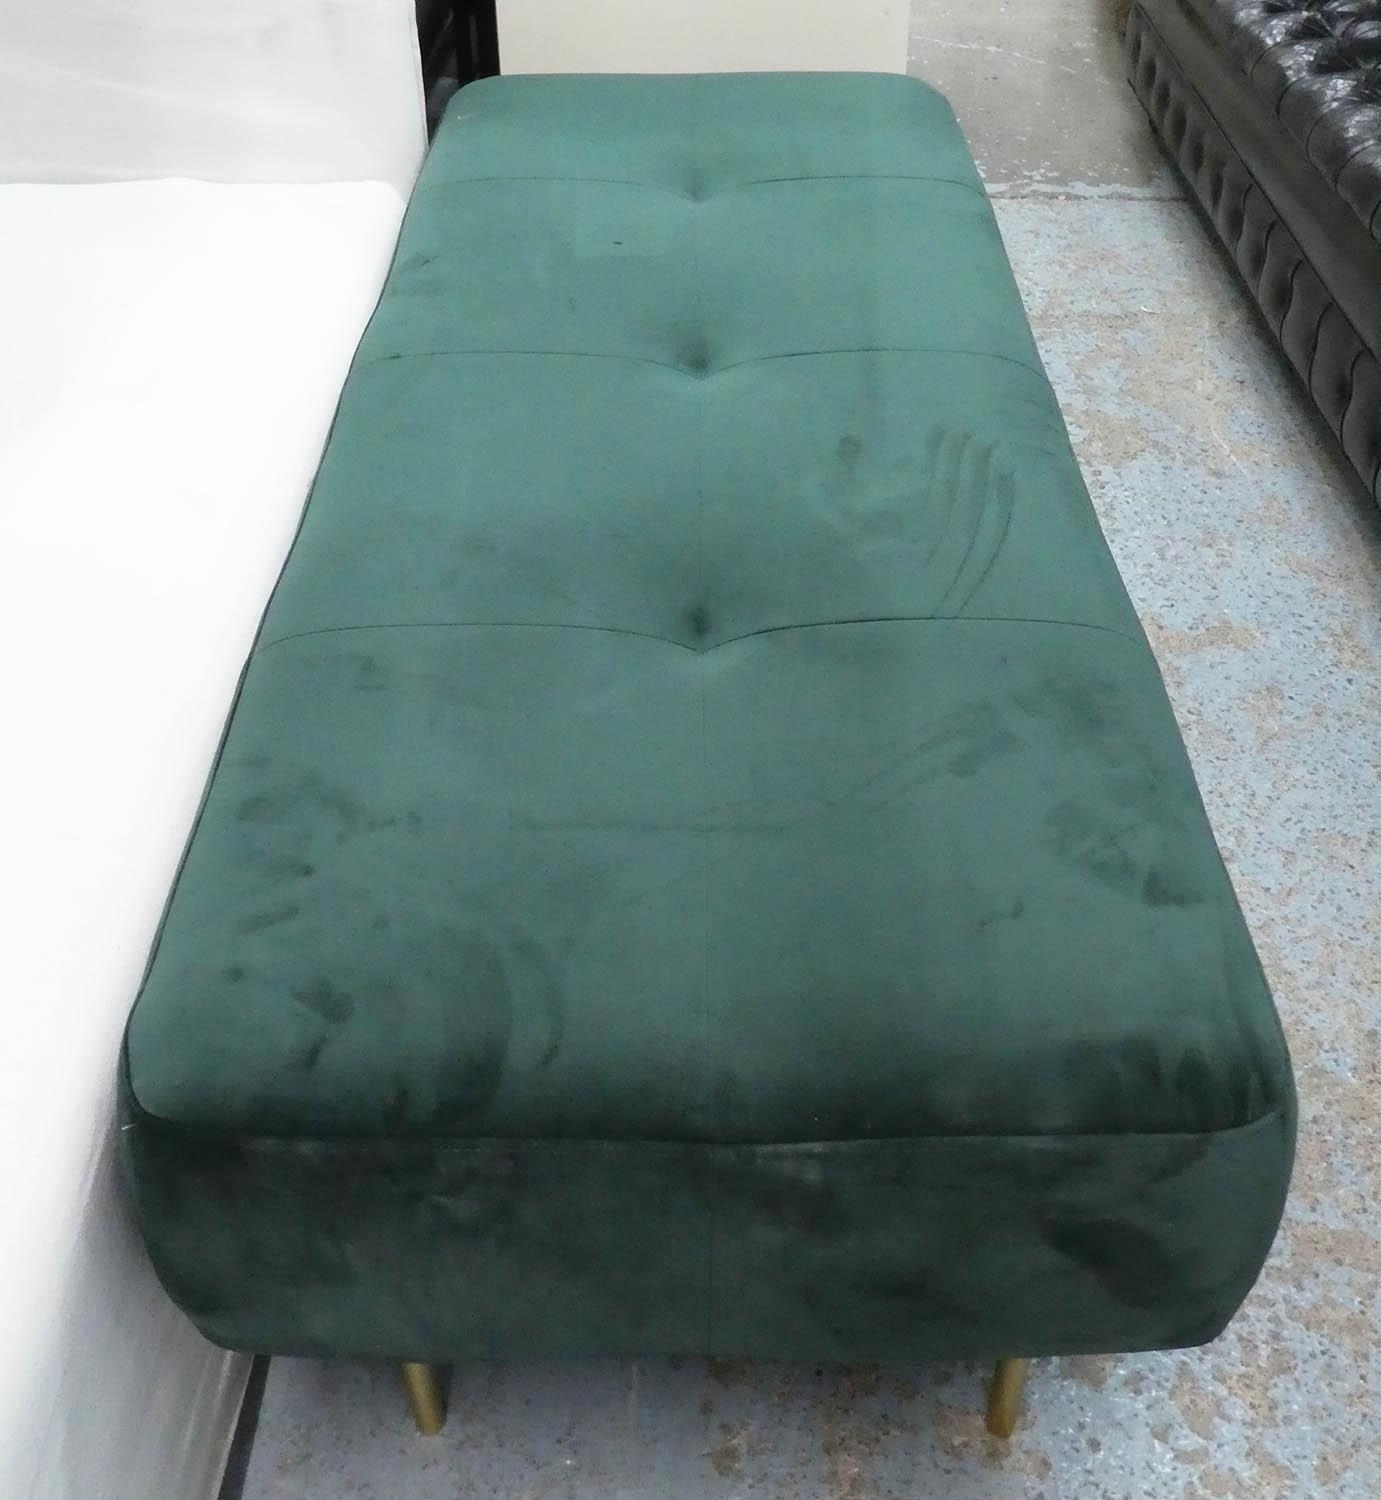 SWOON KOHL BENCH, green velvet, 150cm x 60cm x 50cm approx. - Image 2 of 4